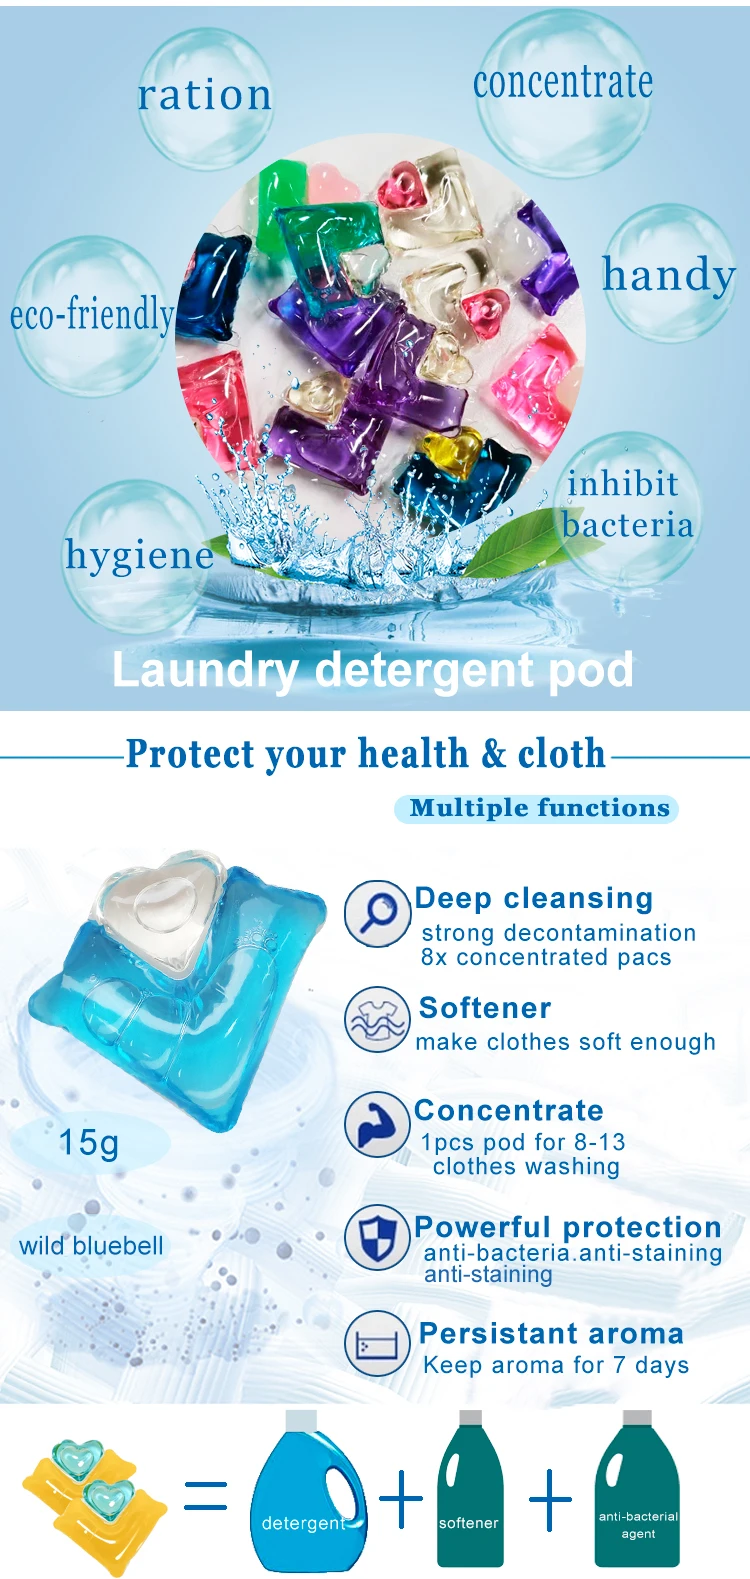 Wholesale acid slurry detergent laundry akg powder care companion manufacture pod laundry